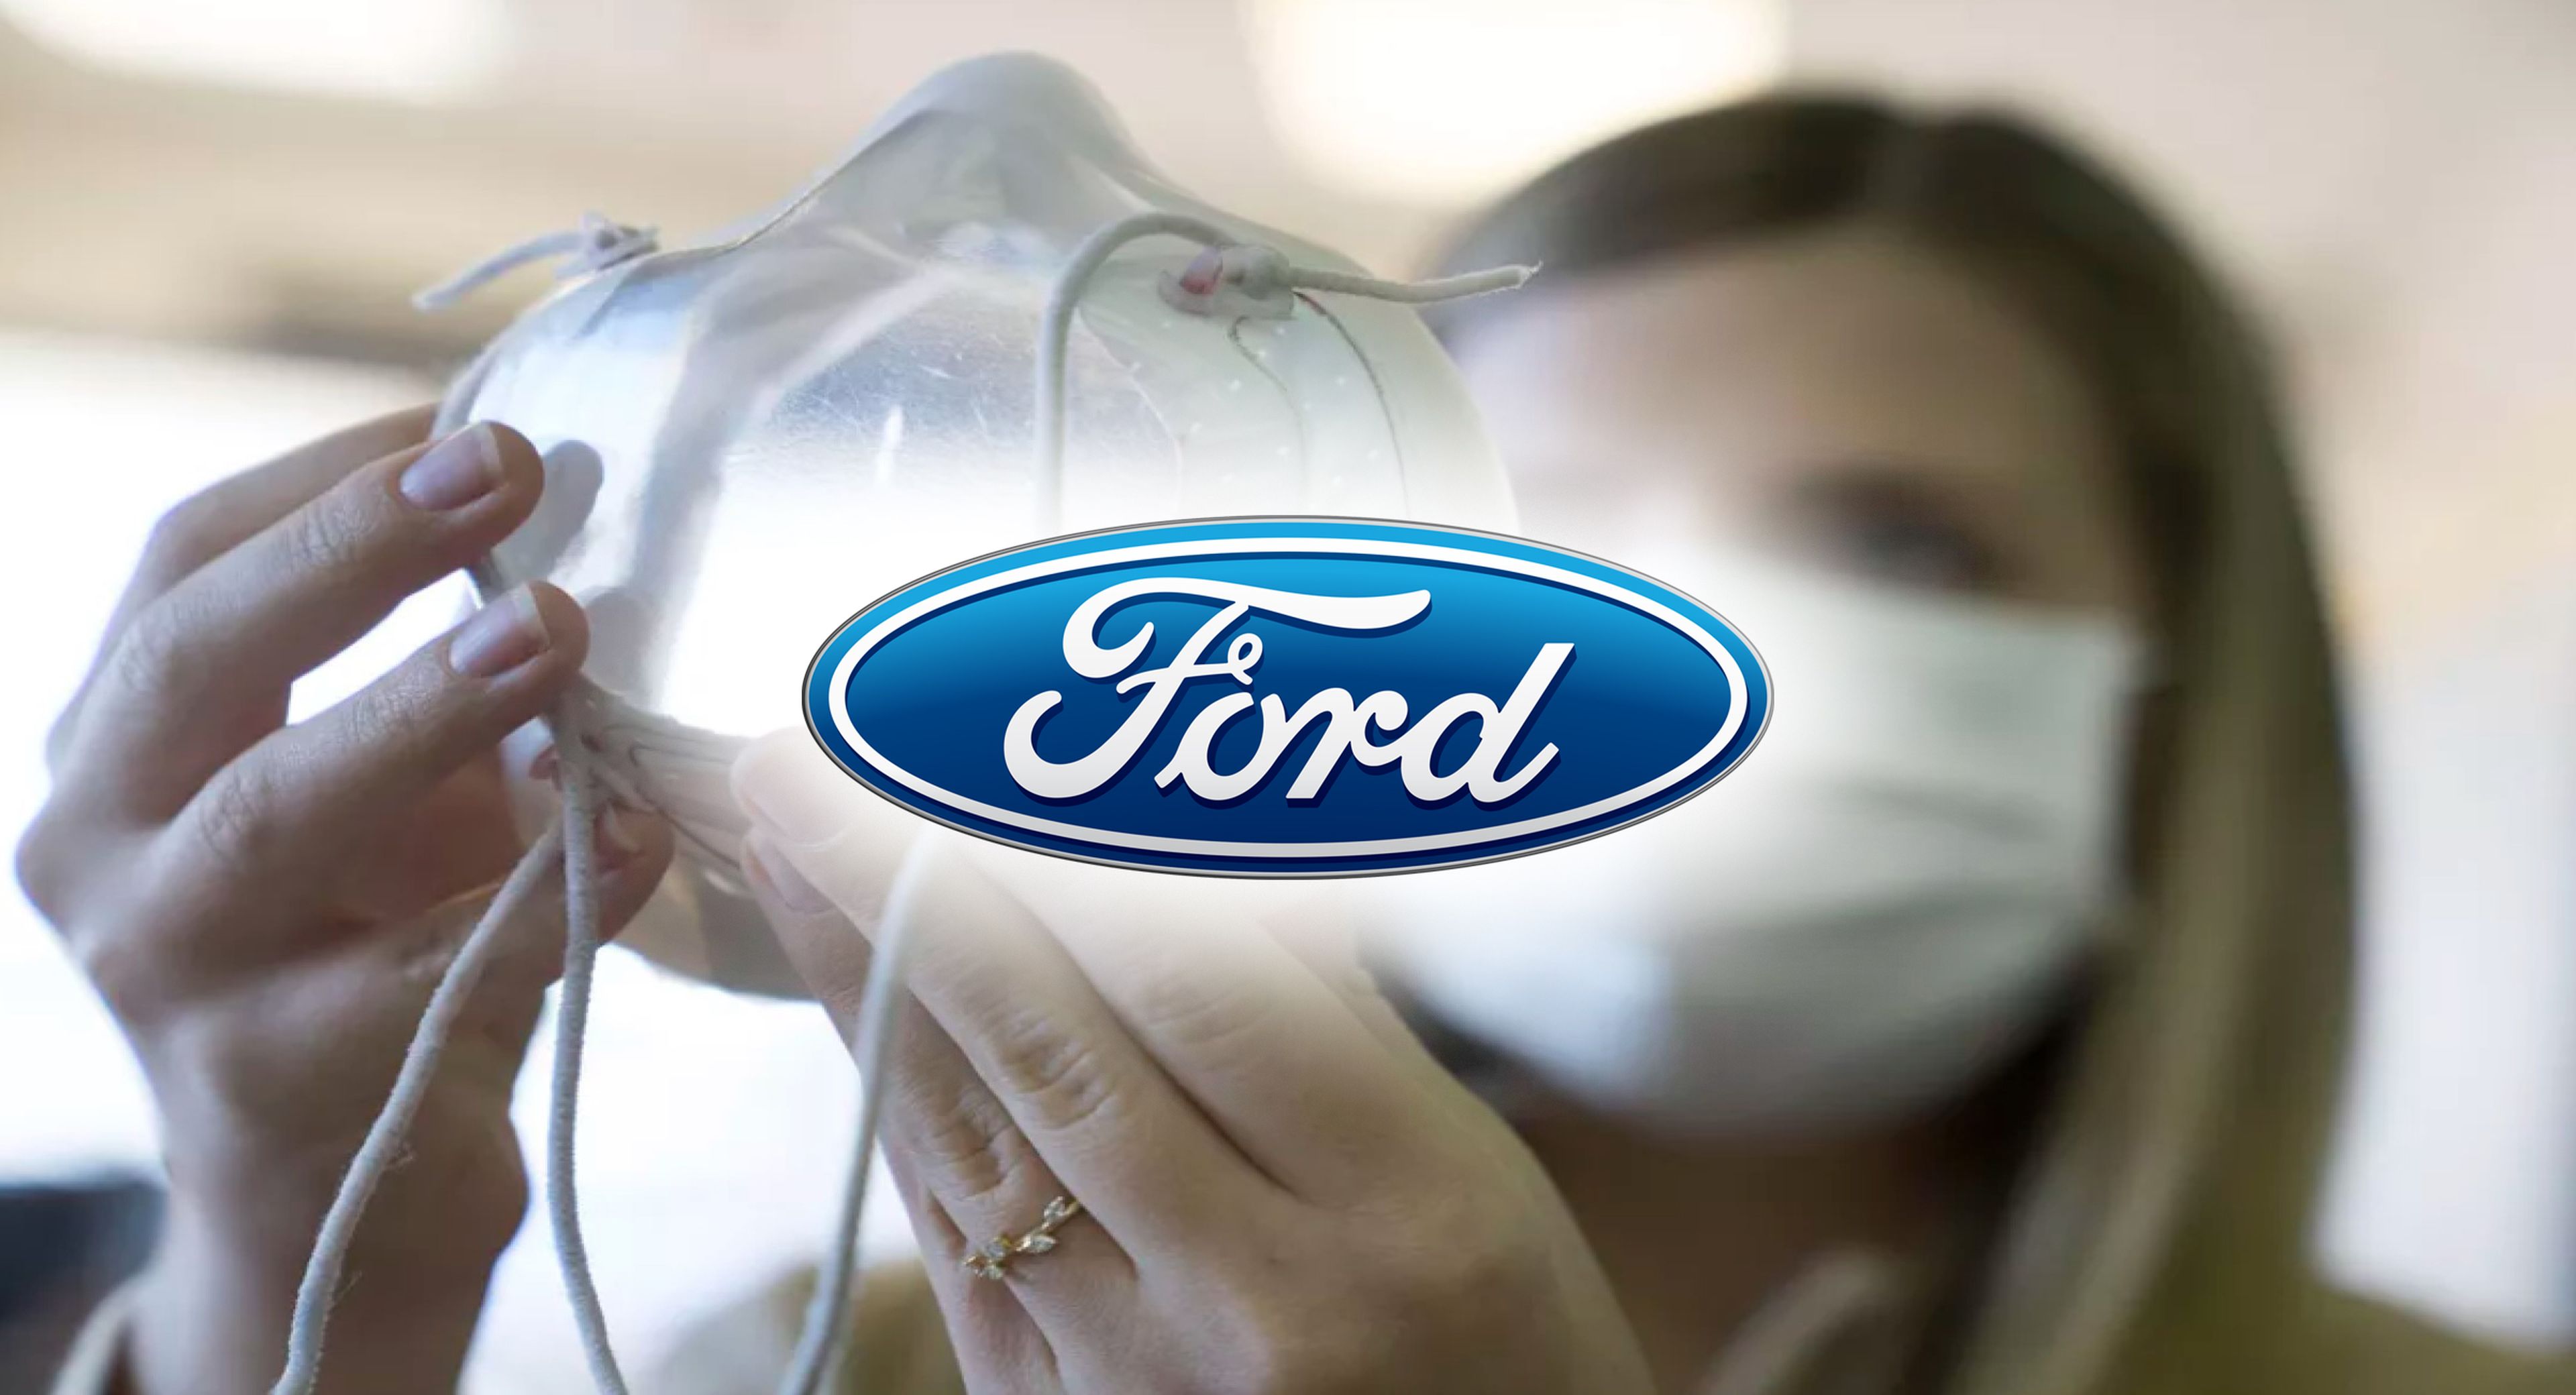 Ford ha desarrollado una mascarilla con sistema de filtración y... ¡Es transparente!